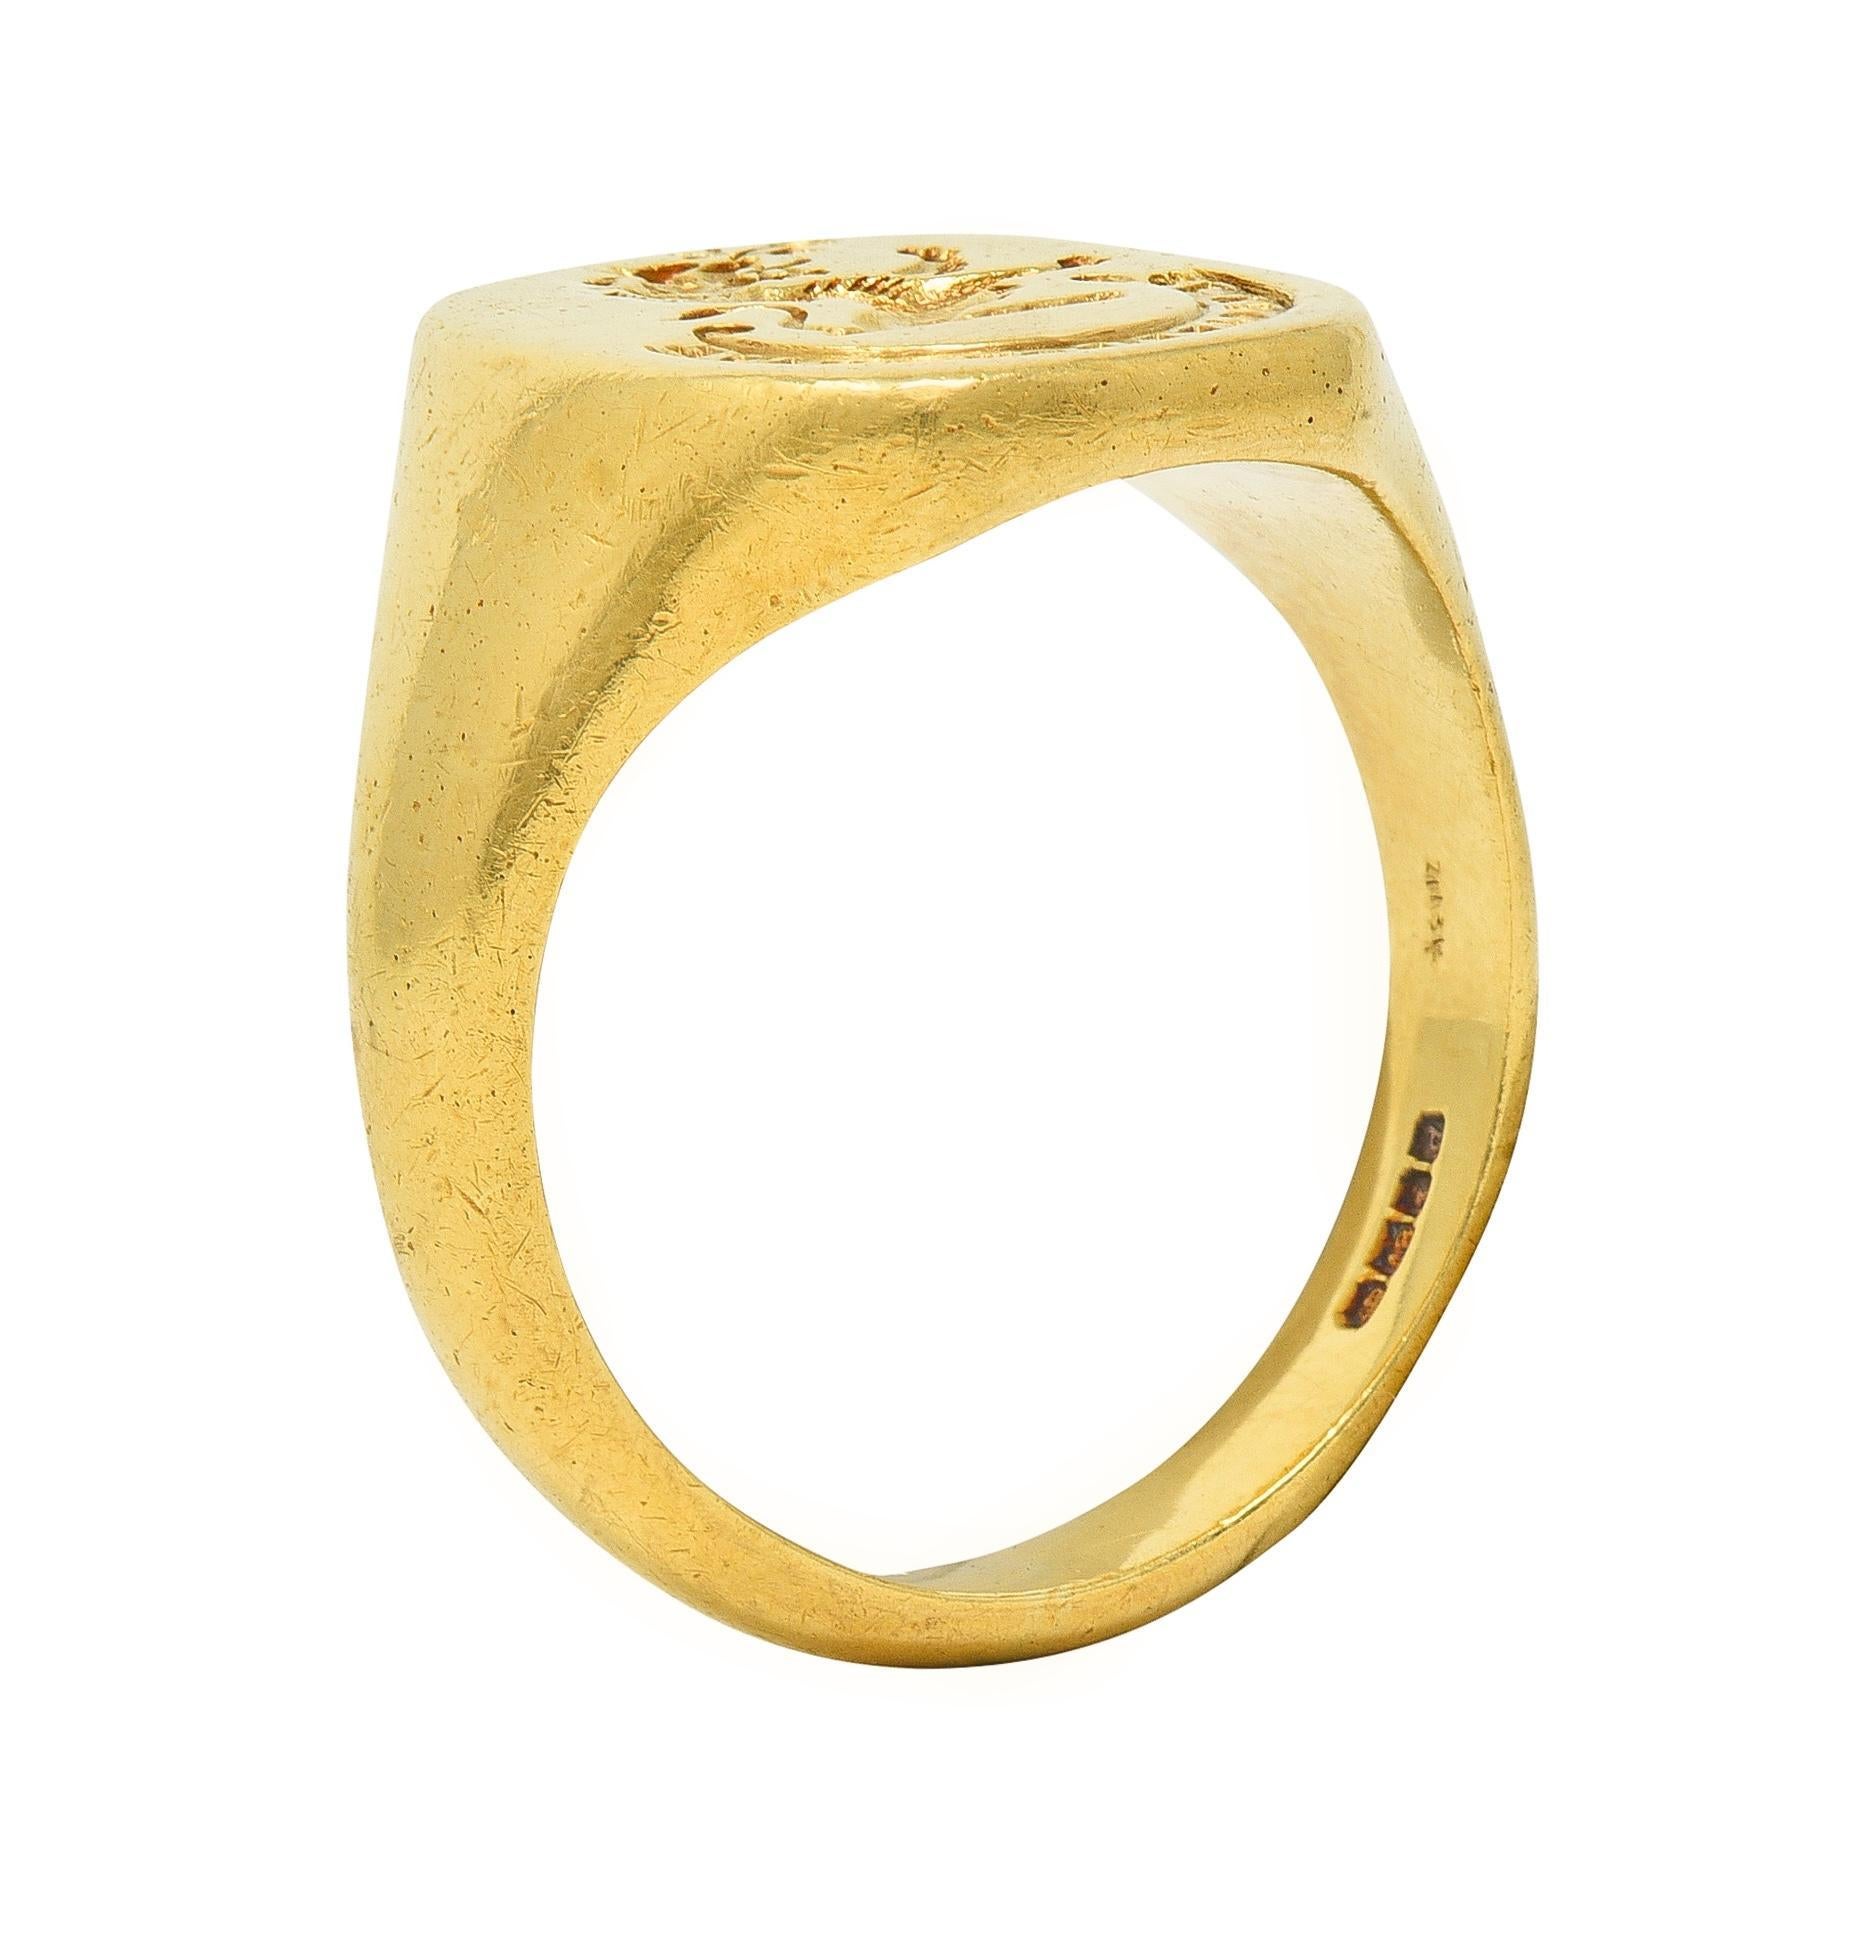 Vintage 1959 18 Karat Yellow Gold Heraldic Lion Intaglio Men's Signet Ring 5